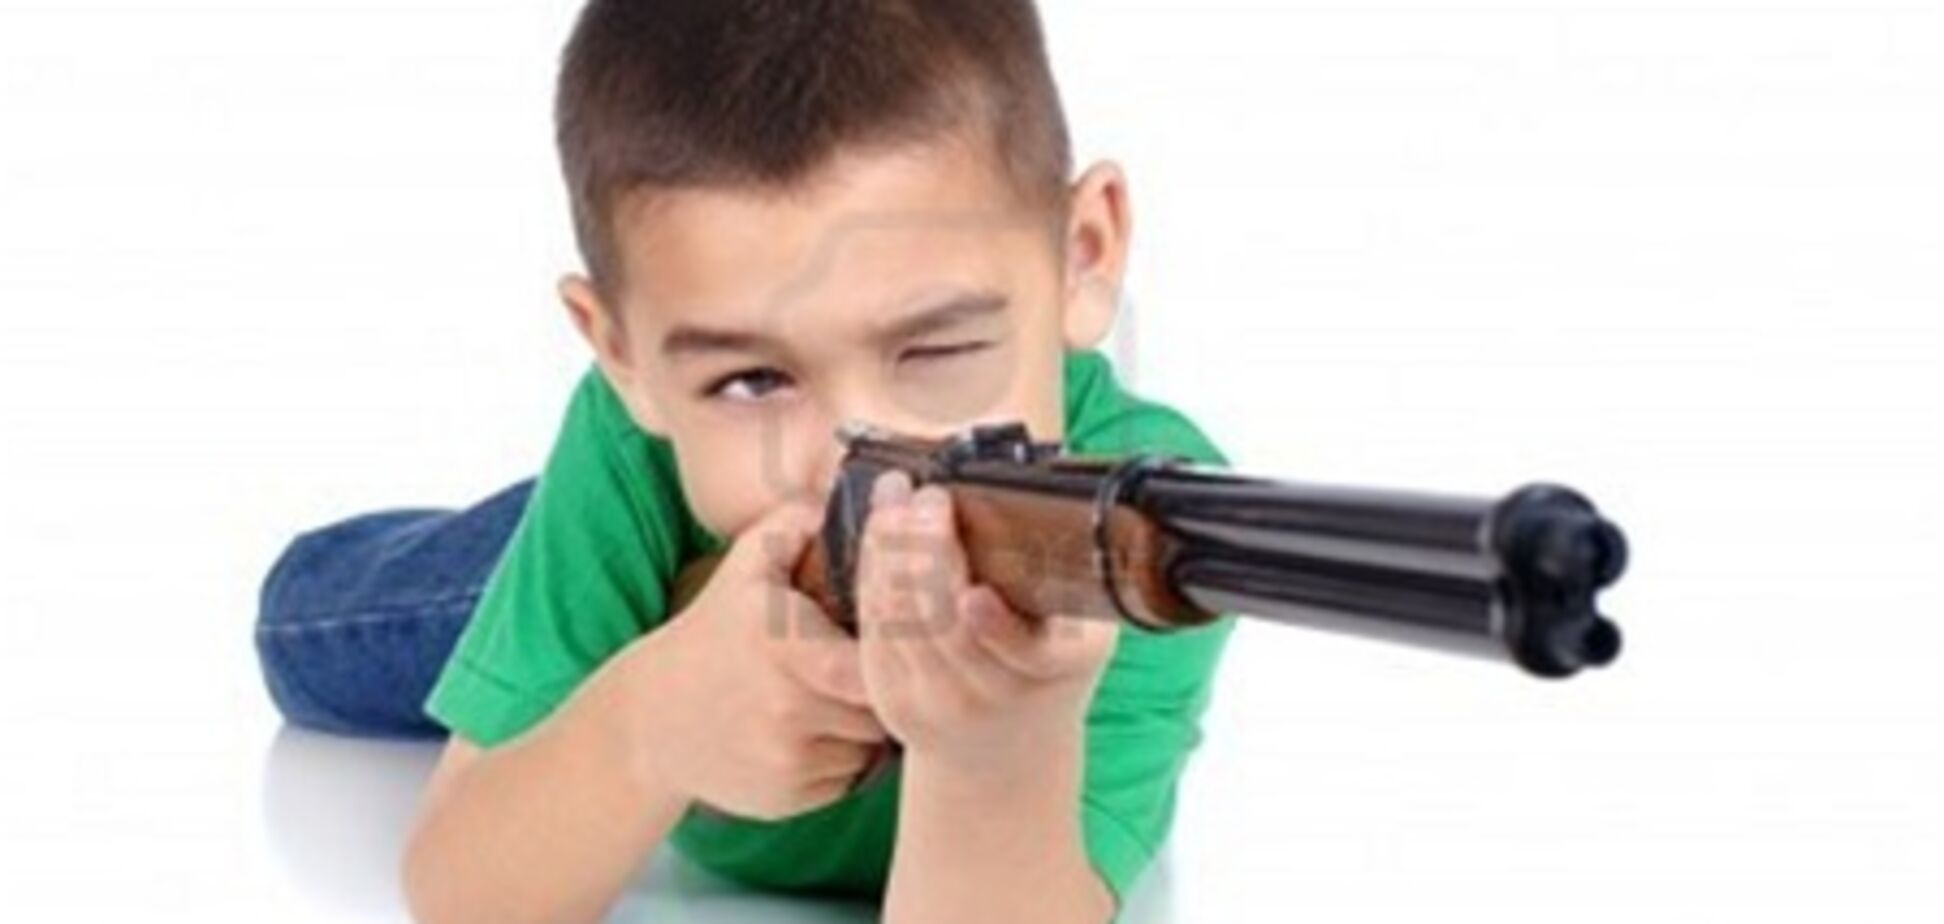 Десятилетний мальчик, угрожая винтовкой, отнял деньги у девочки